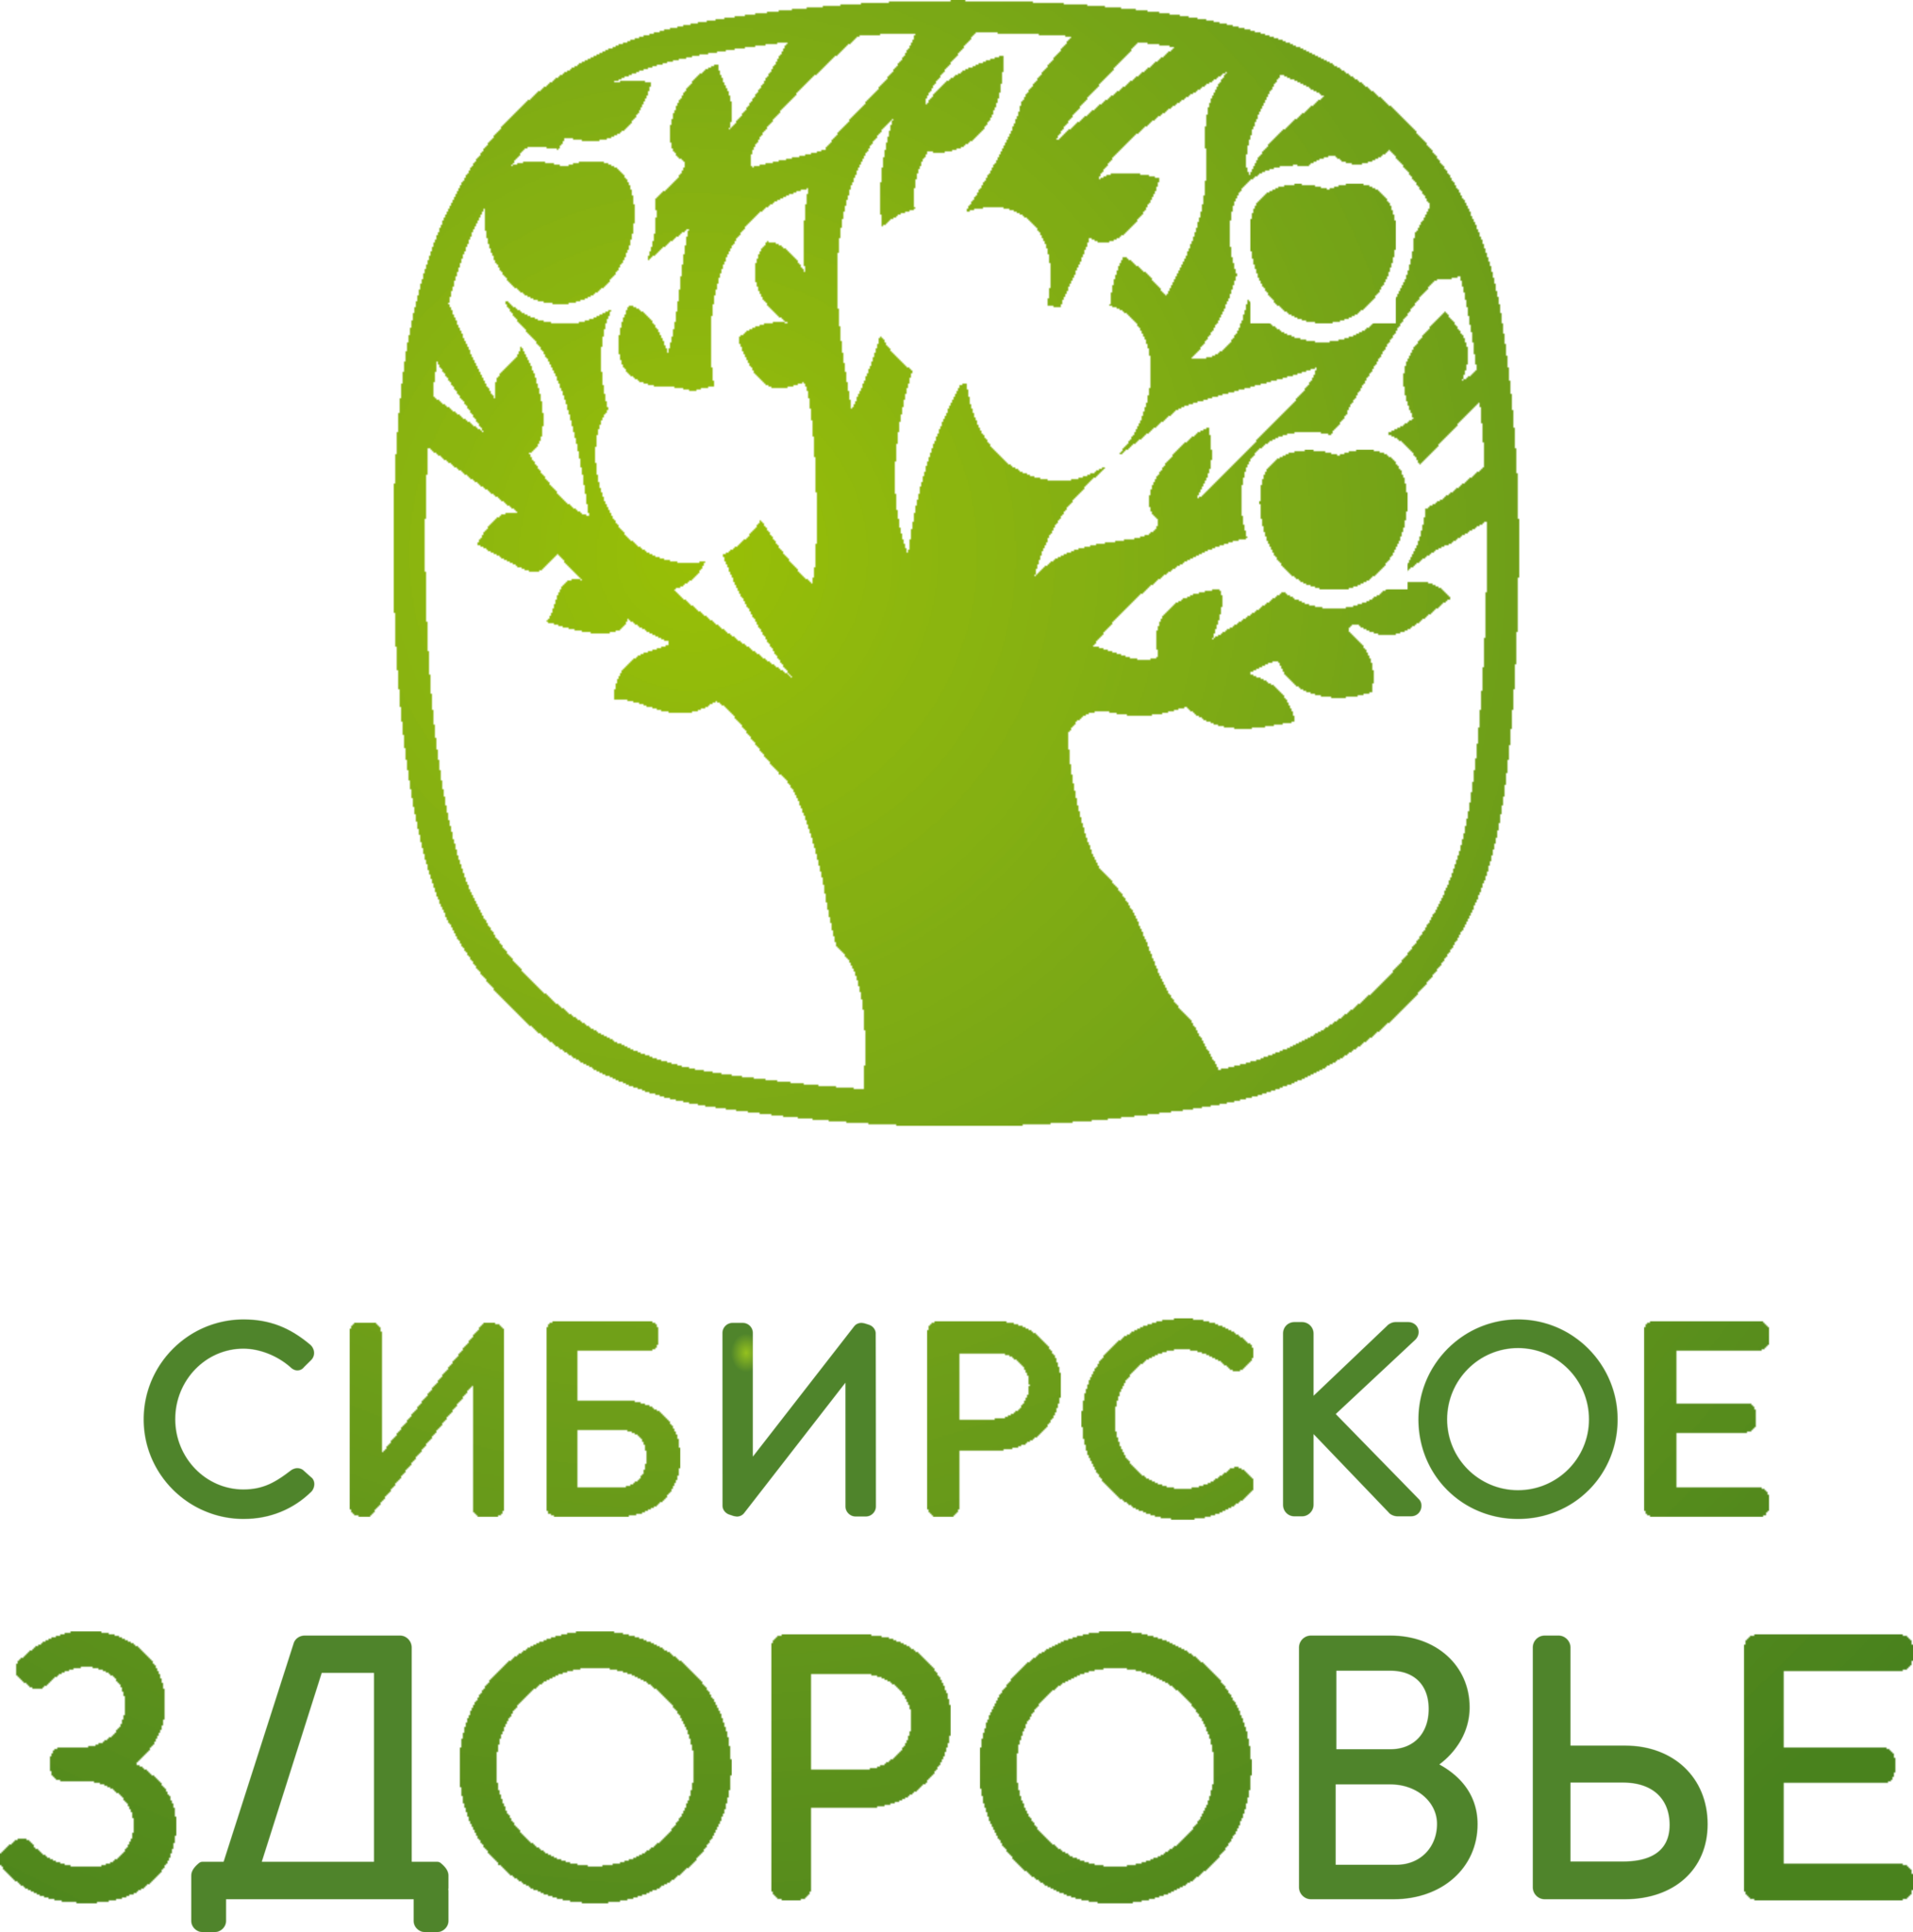 Сибирское здоровье логотип. Логотип корпорации Сибирское здоровье. Сибирское здоровье Siberian Wellness логотип. Сибирское здоровье логотип вектор. Сайт сиб здоровья